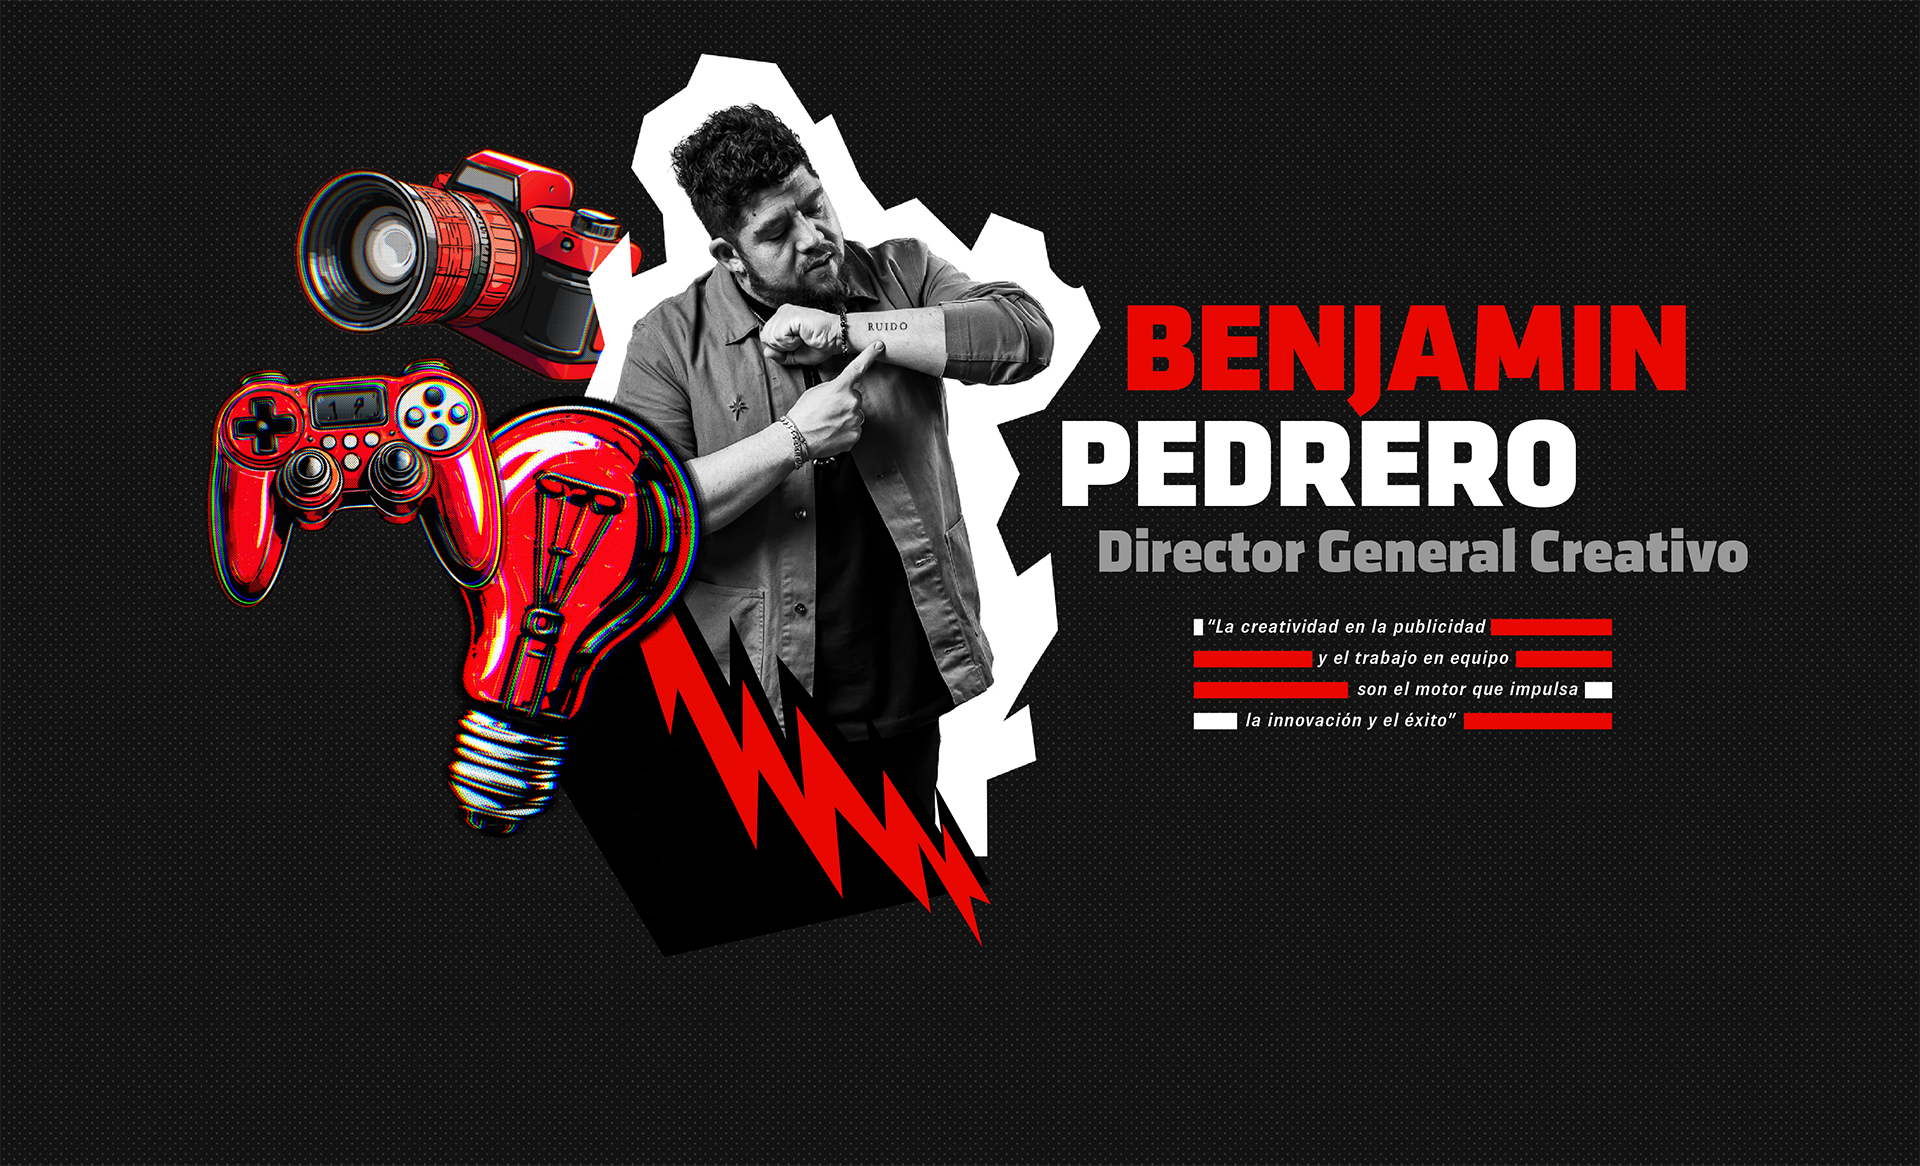 Benjamin Pedrero